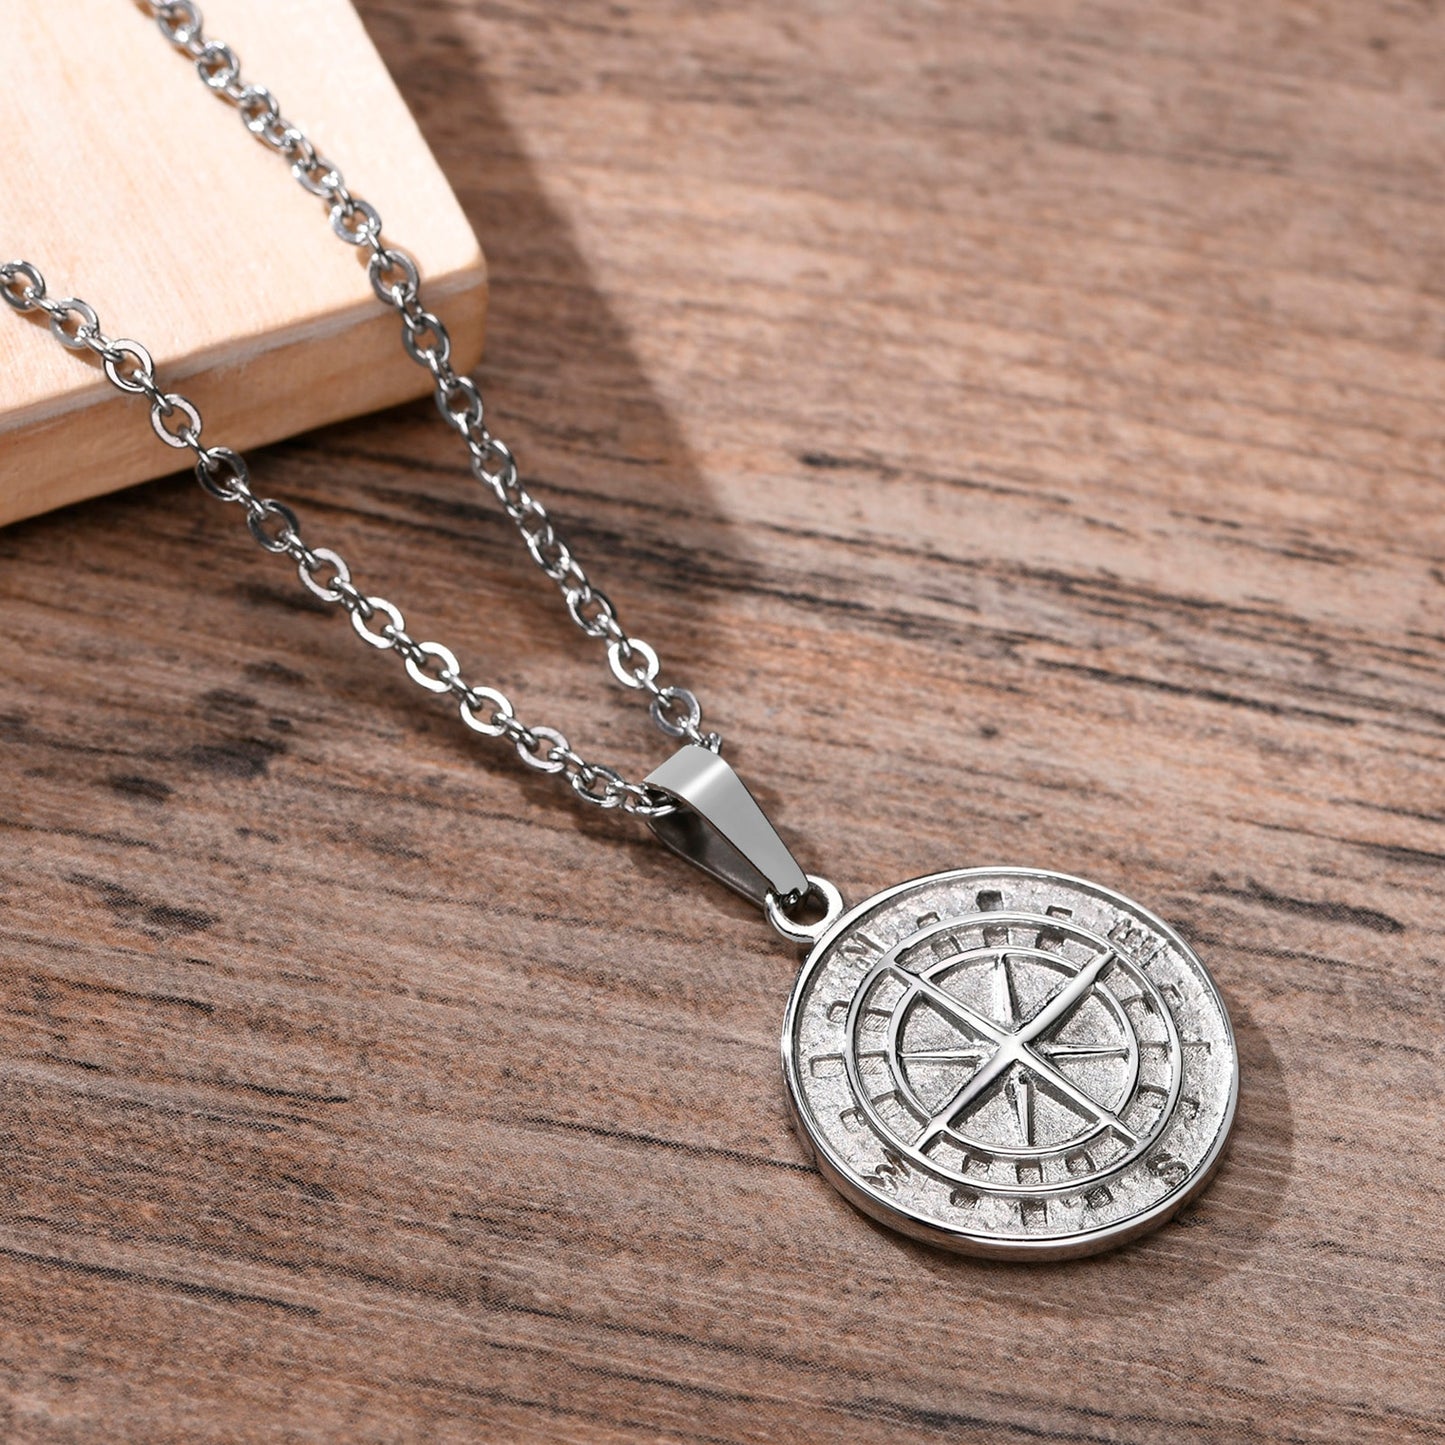 Boho Compass Pendant Necklace - Top Boho